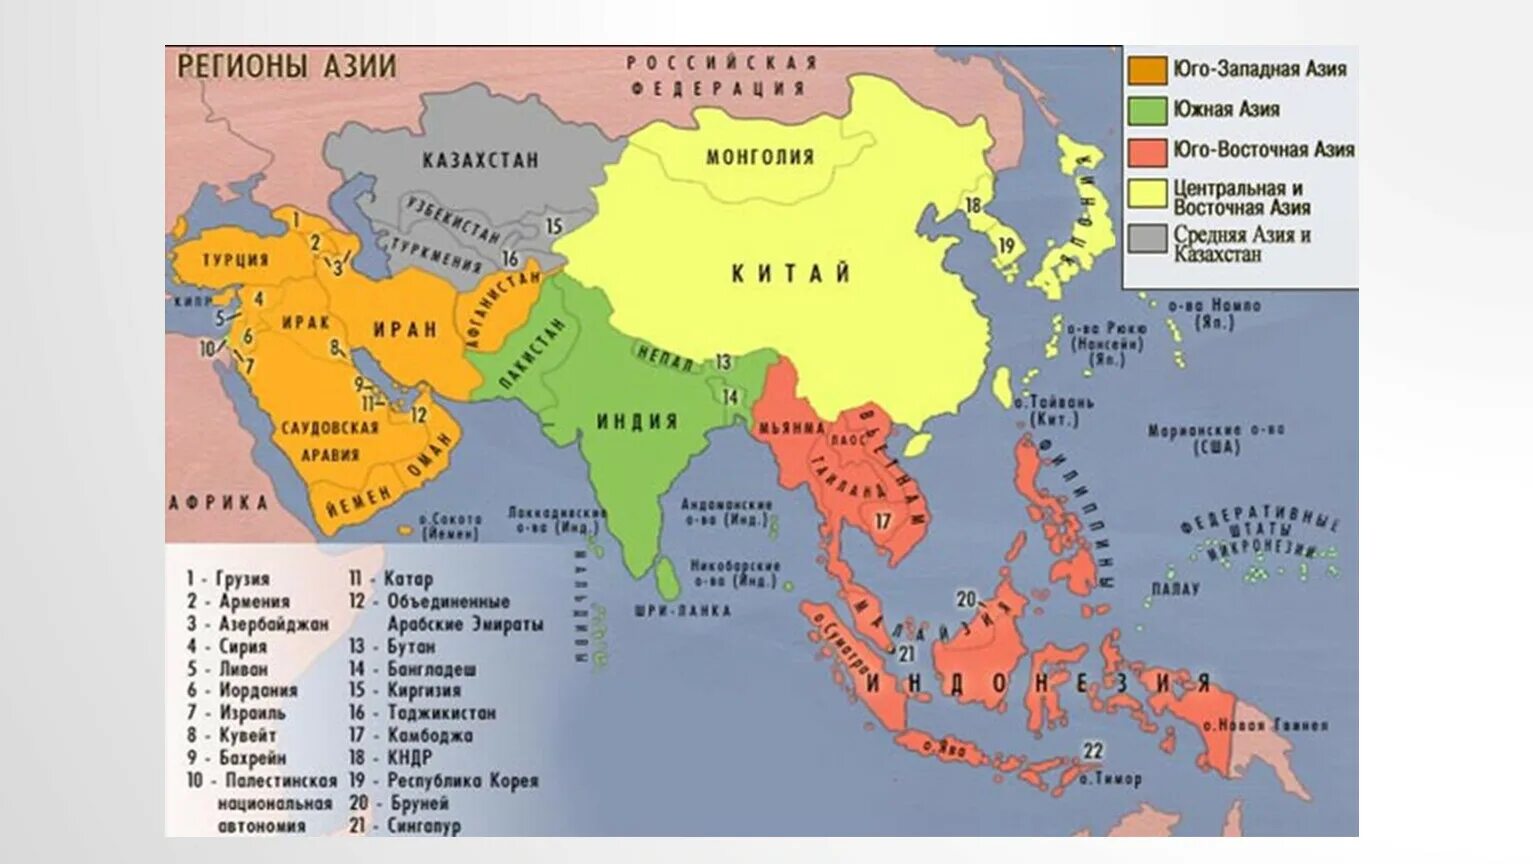 Asia area. Страны Южной Азии на карте. Субрегионы и страны зарубежной Азии на карте. Карте зарубежной Азии страны Юго-Восточной Азии.. Юго-Восточная субрегион зарубежной Азии.